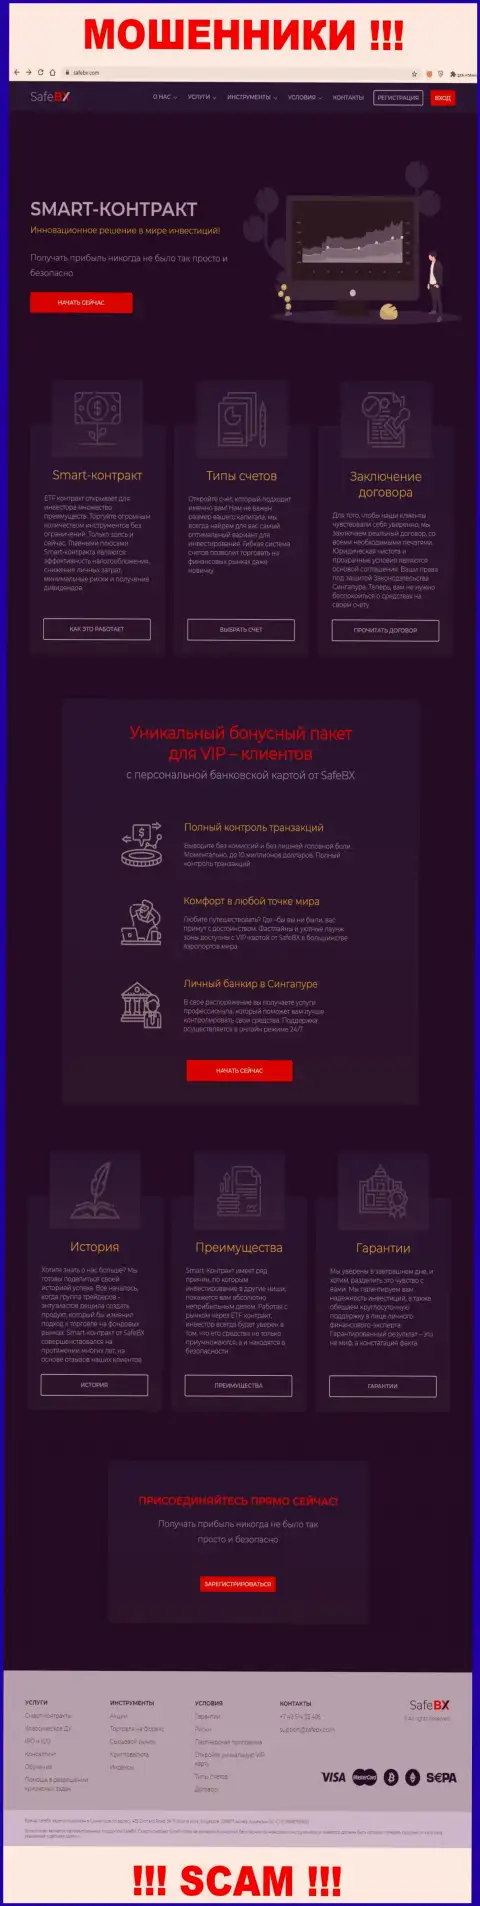 Скрин официального веб-портала СейфБХ - SafeBX Com